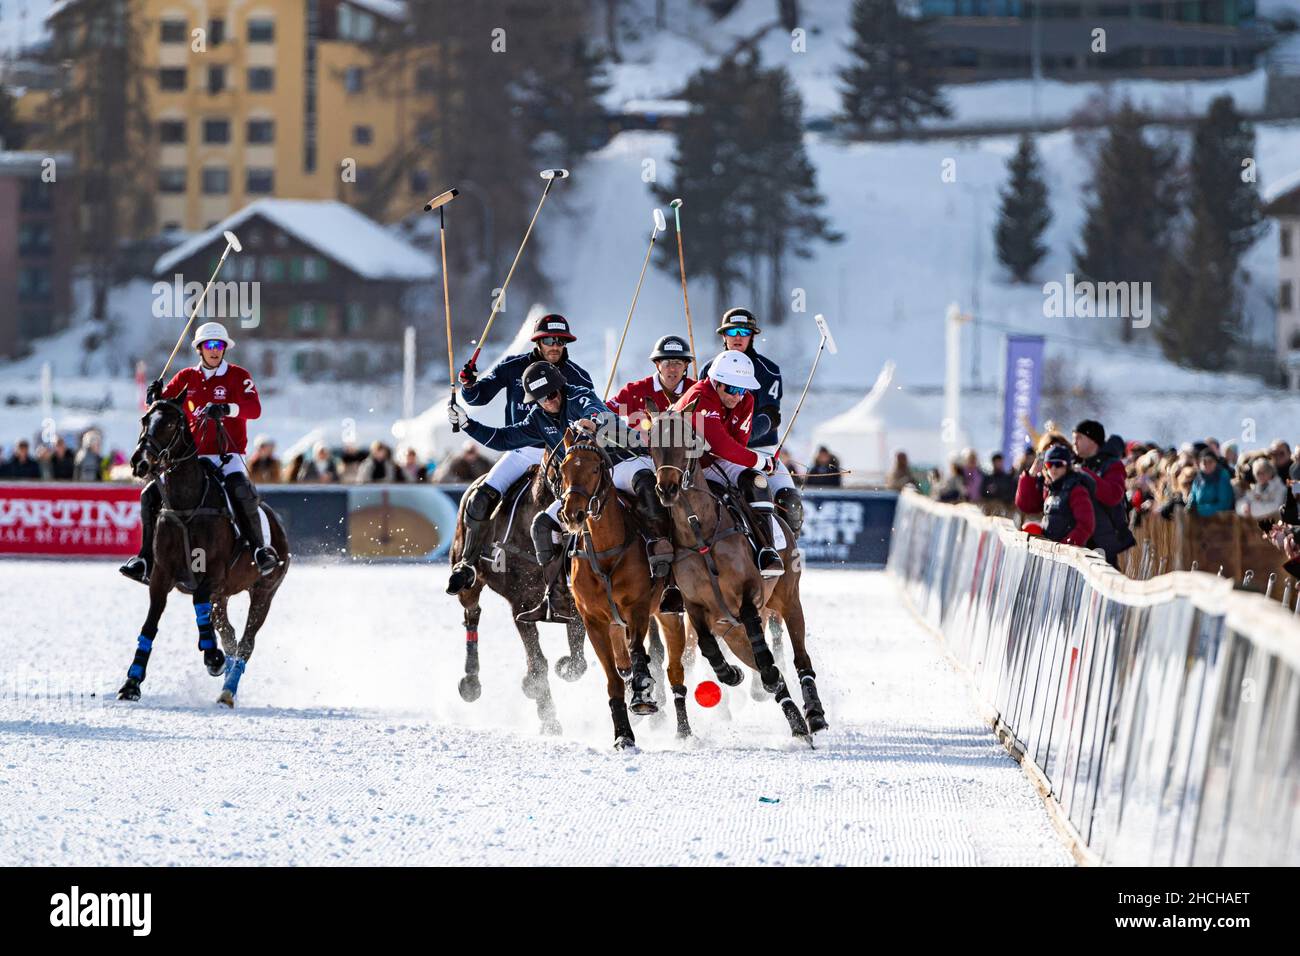 Spieler vom Team Maserati (blau) und Spieler vom Team St. Moritz (rot) kämpfen mit voller körperlicher Anstrengung auf der Schiene um den Ball, 36th Snow Polo Stockfoto